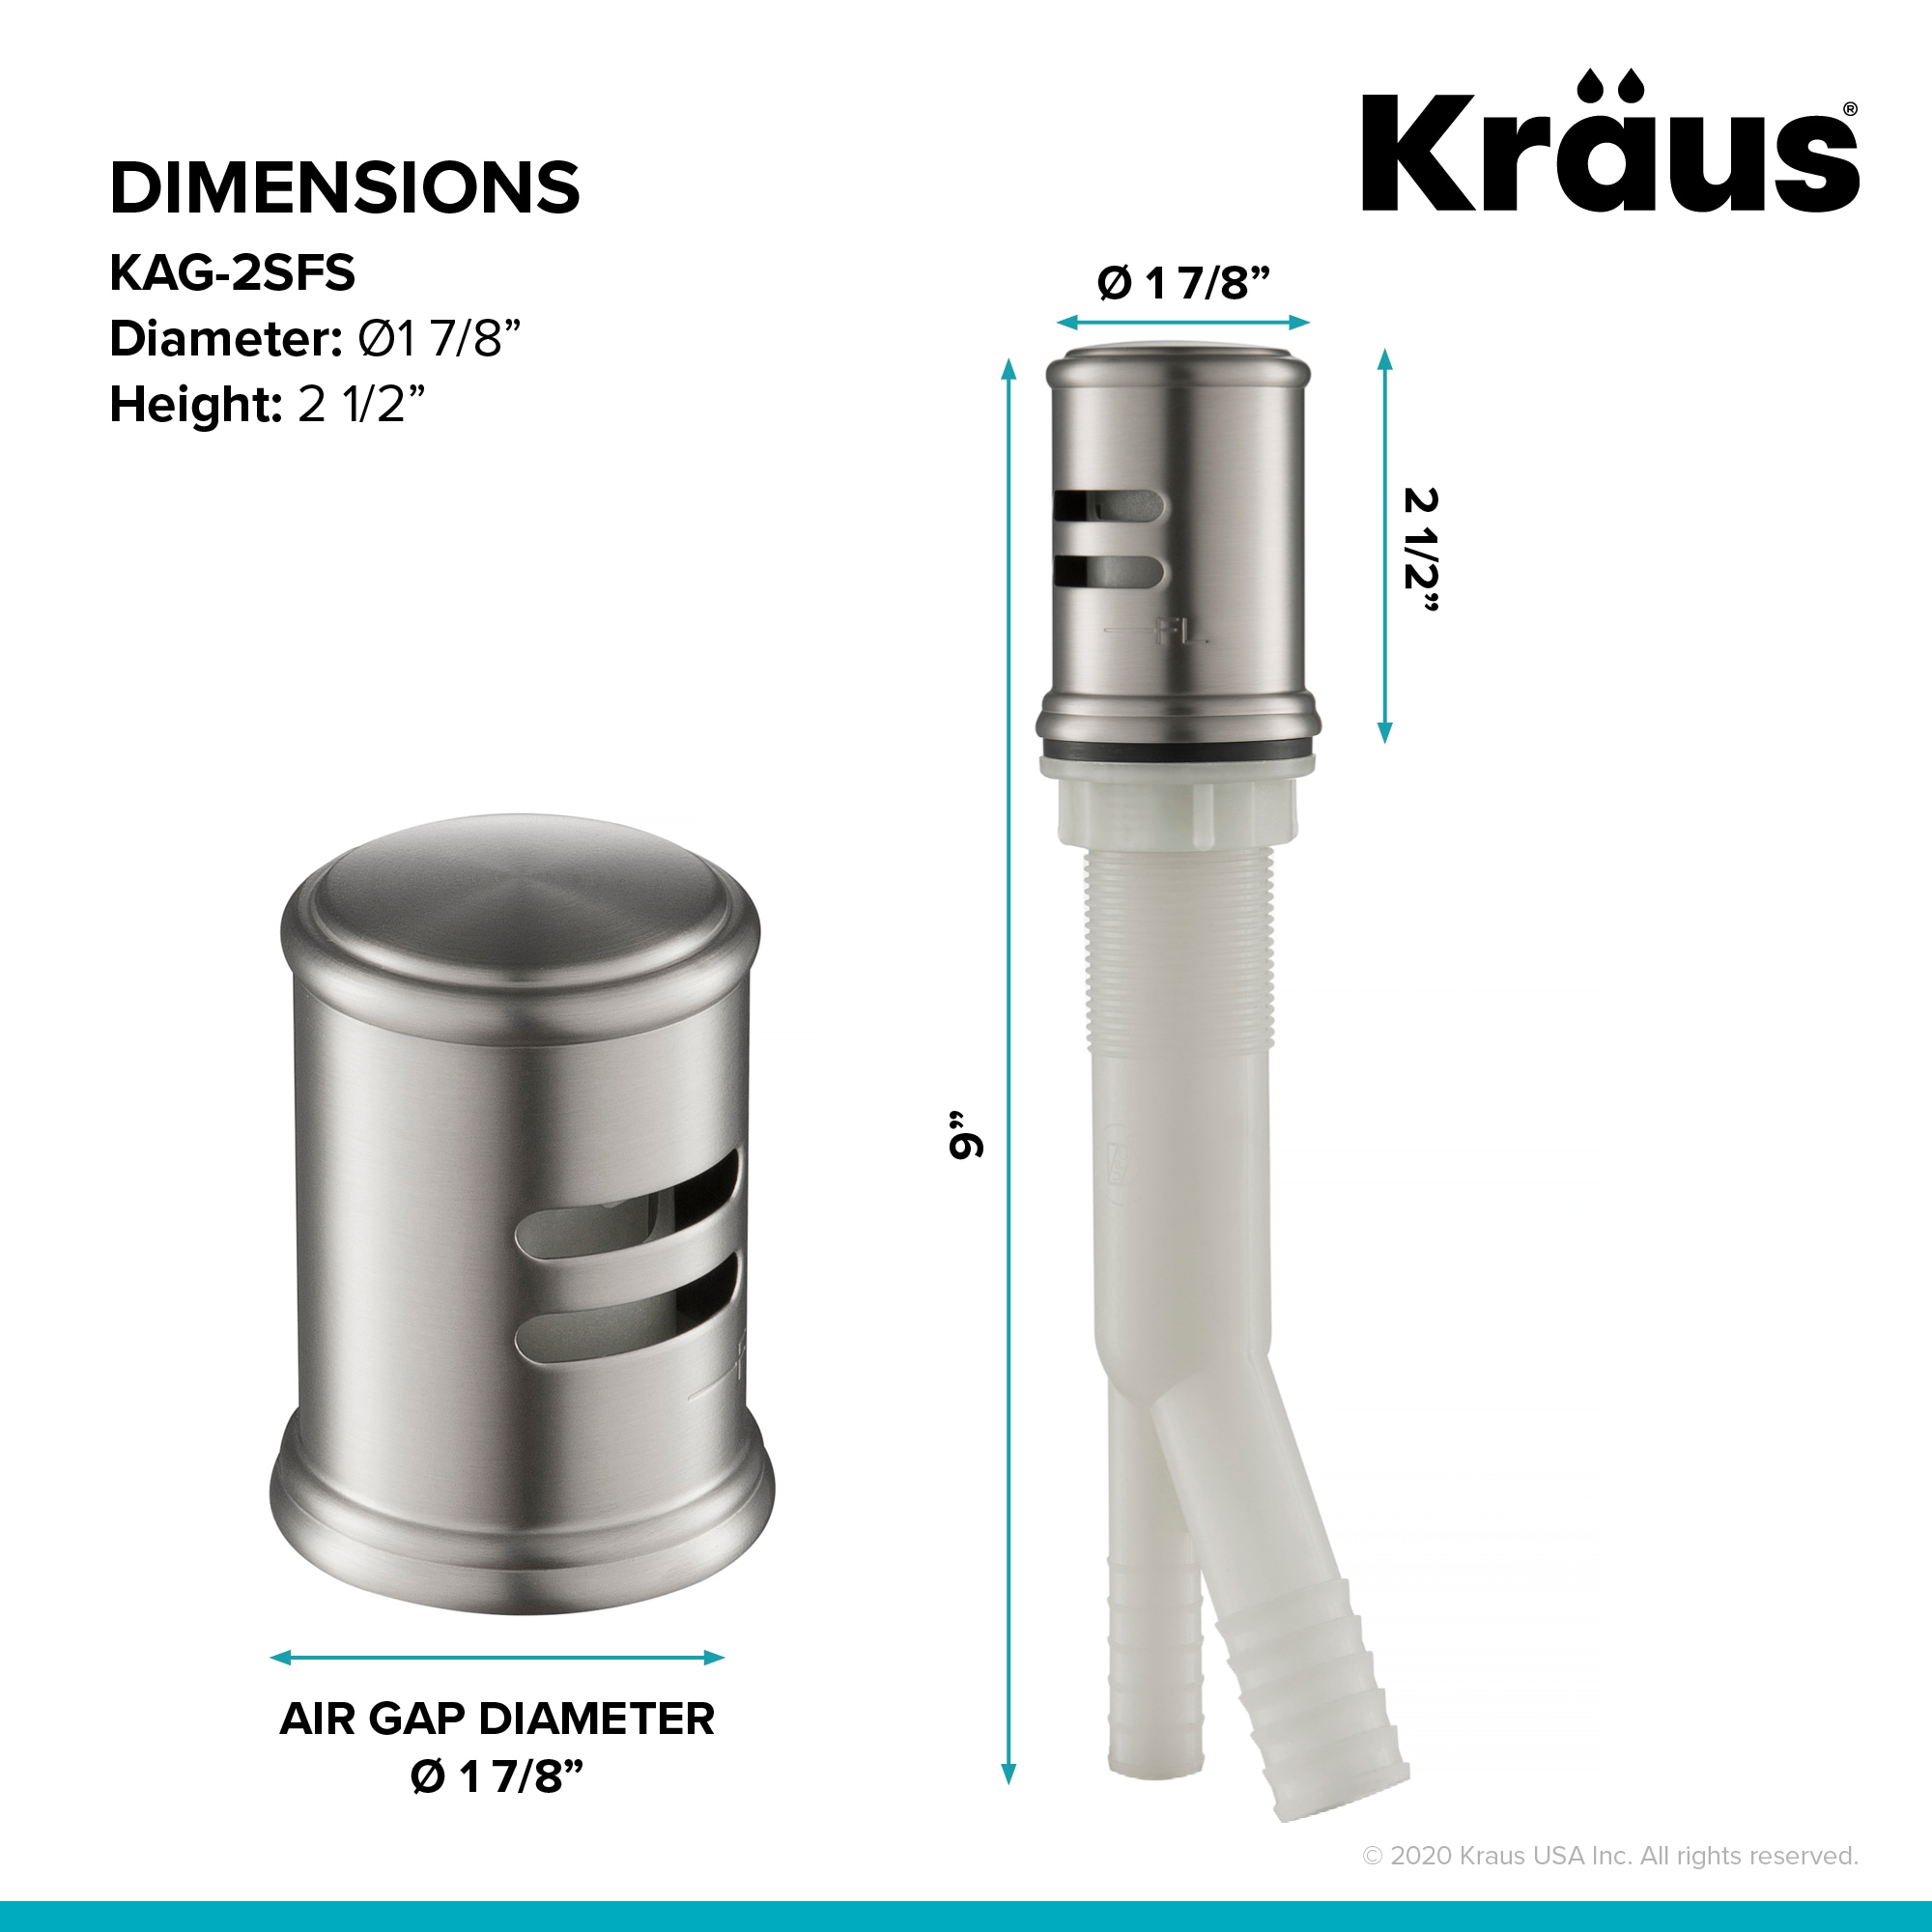 Kraus Metal Air Gap in the Air Gaps department at